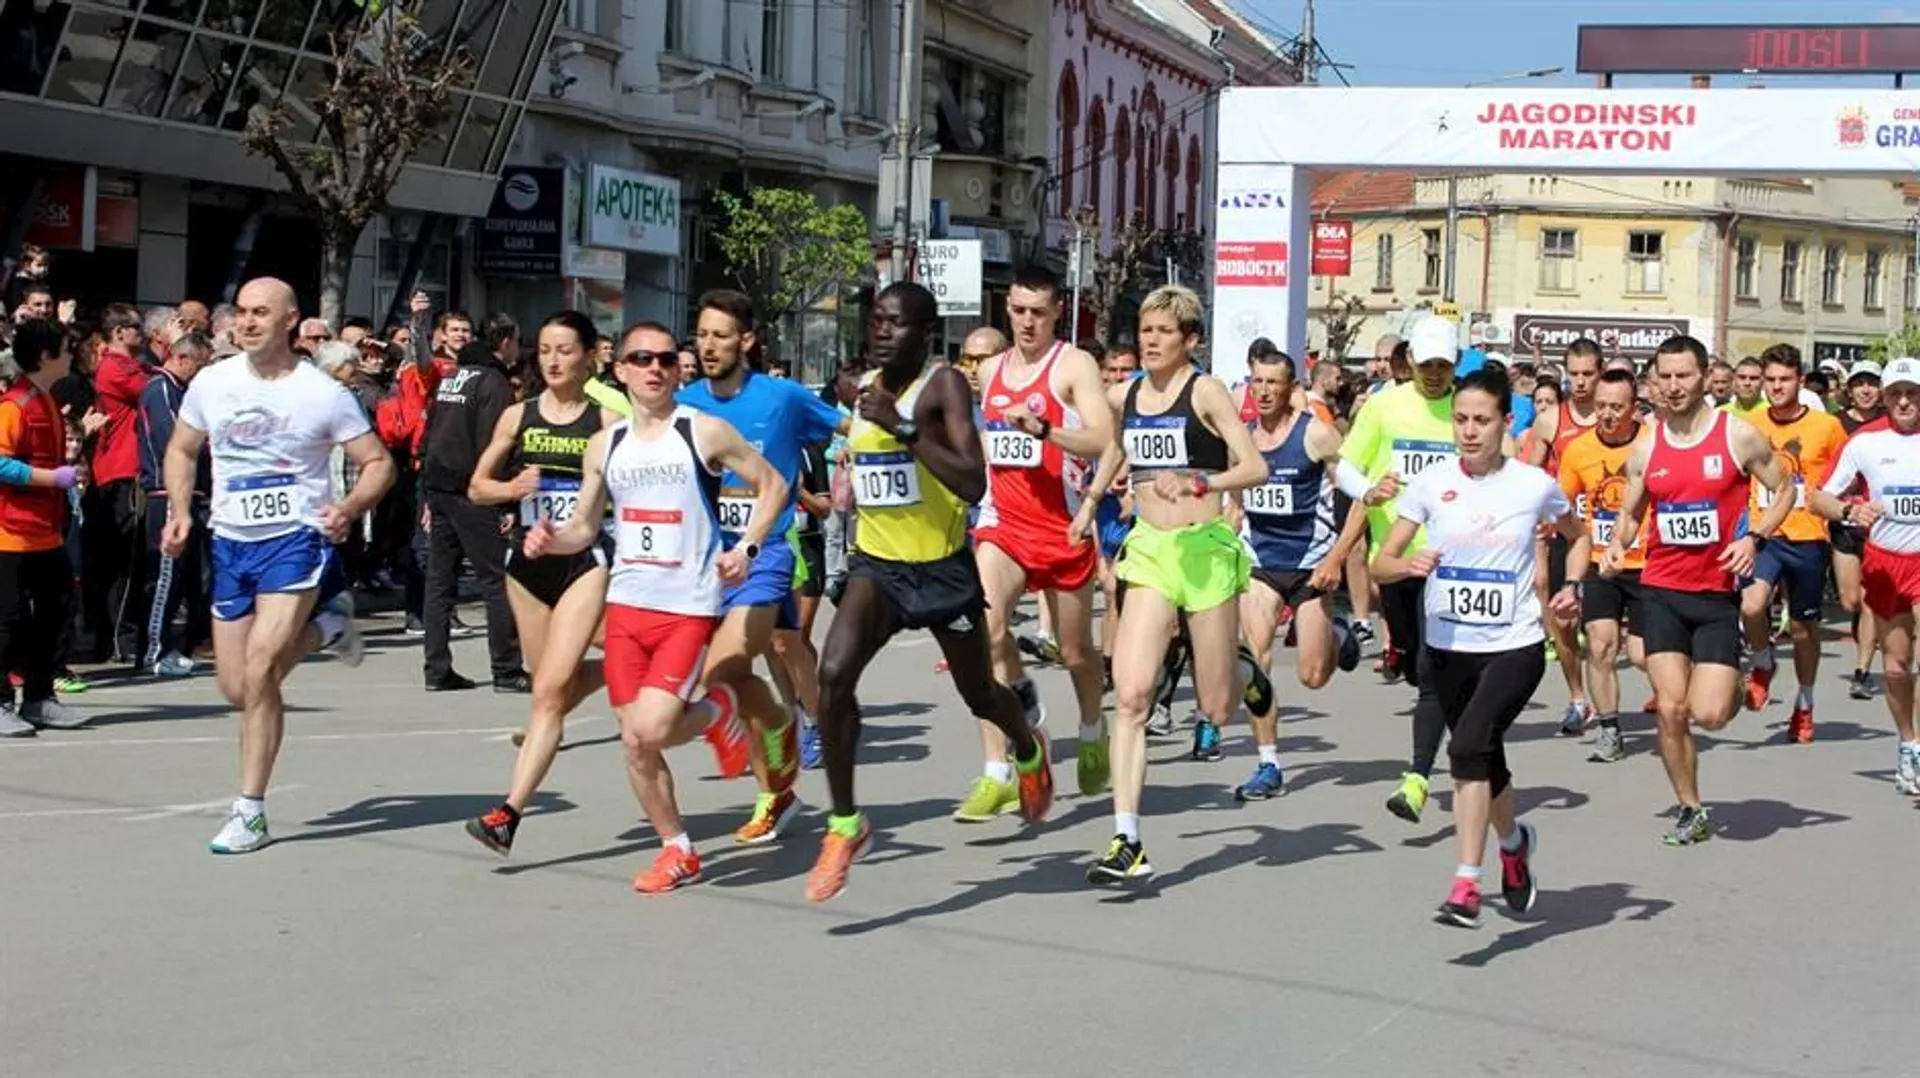 Jagodinski Marathon